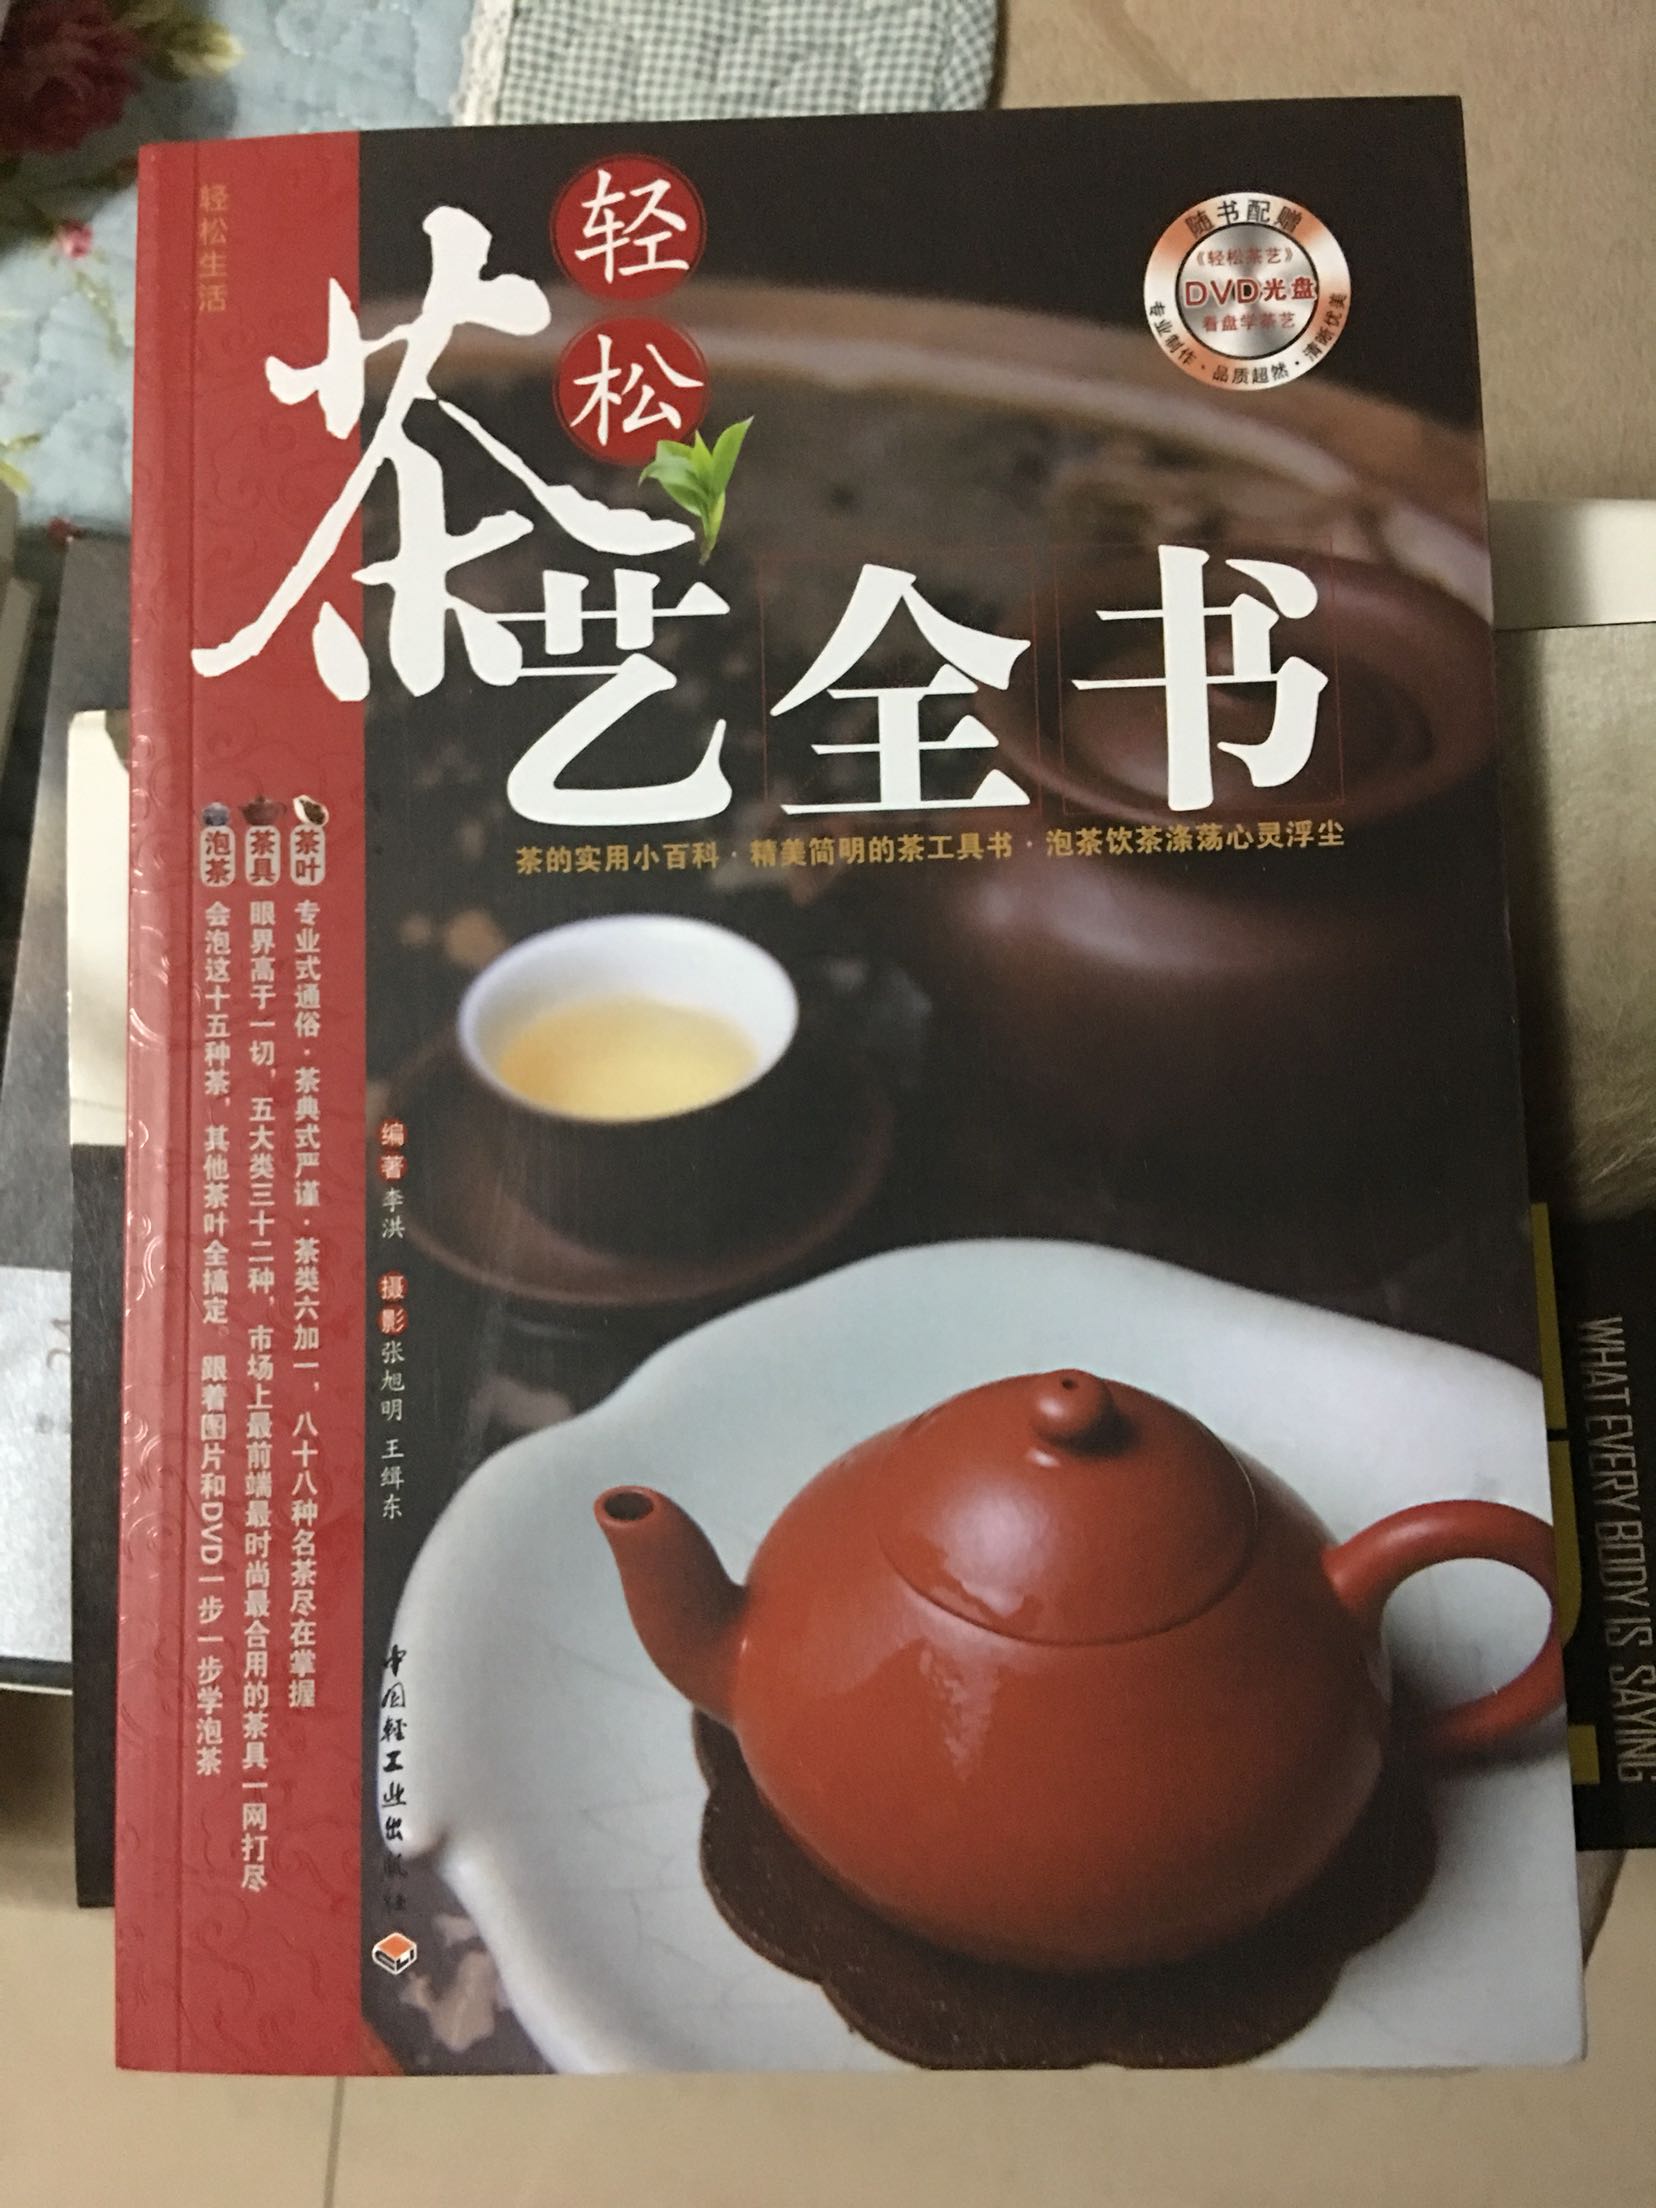 介绍了各种茶的产地，冲泡方法，茶具和茶席的布置等知识，不错的科普读物。